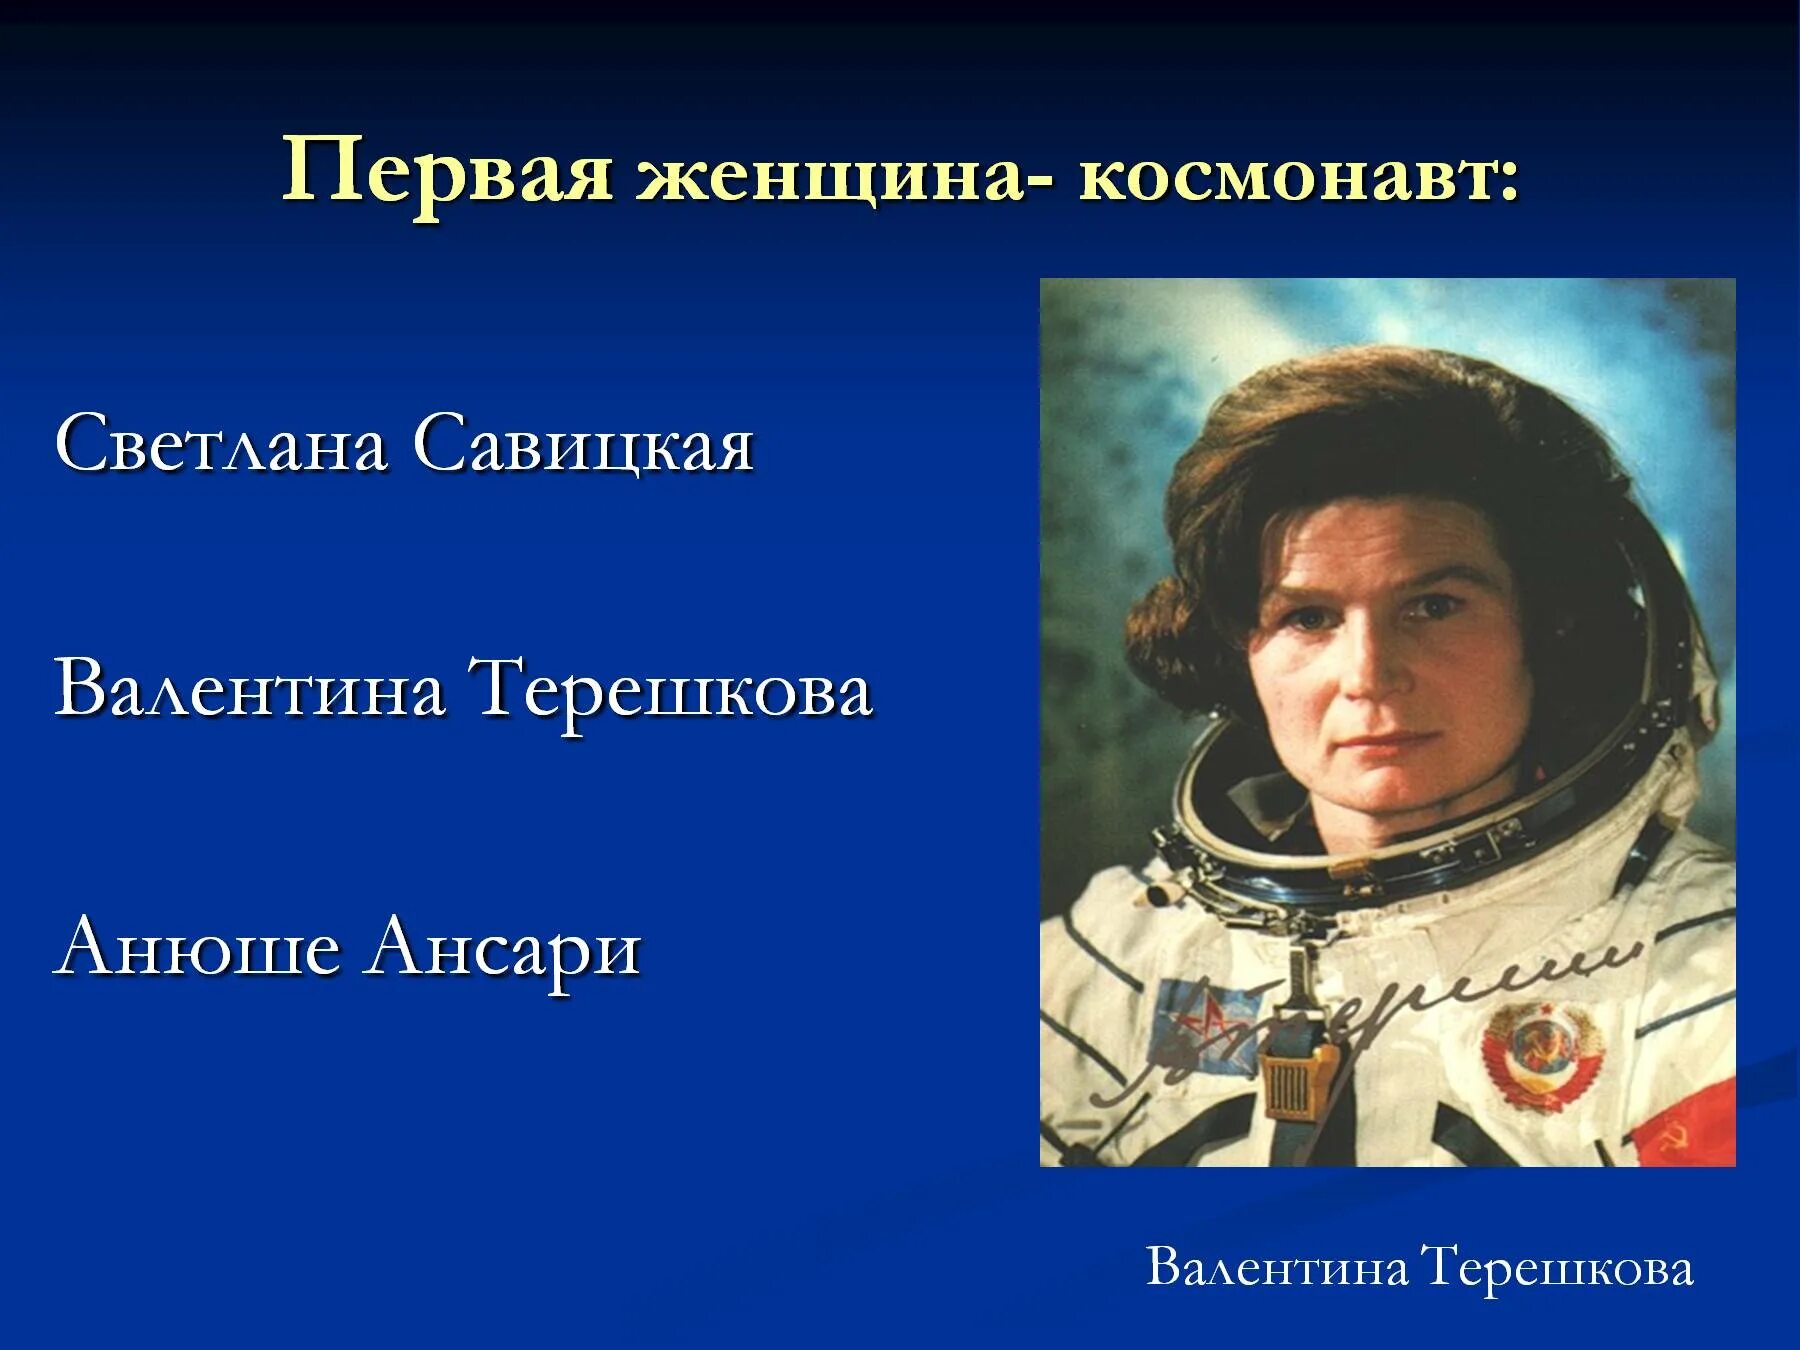 Первопроходцы космоса. Женщины космонавты Терешкова Савицкая. Выдающиеся первопроходцы космоса.